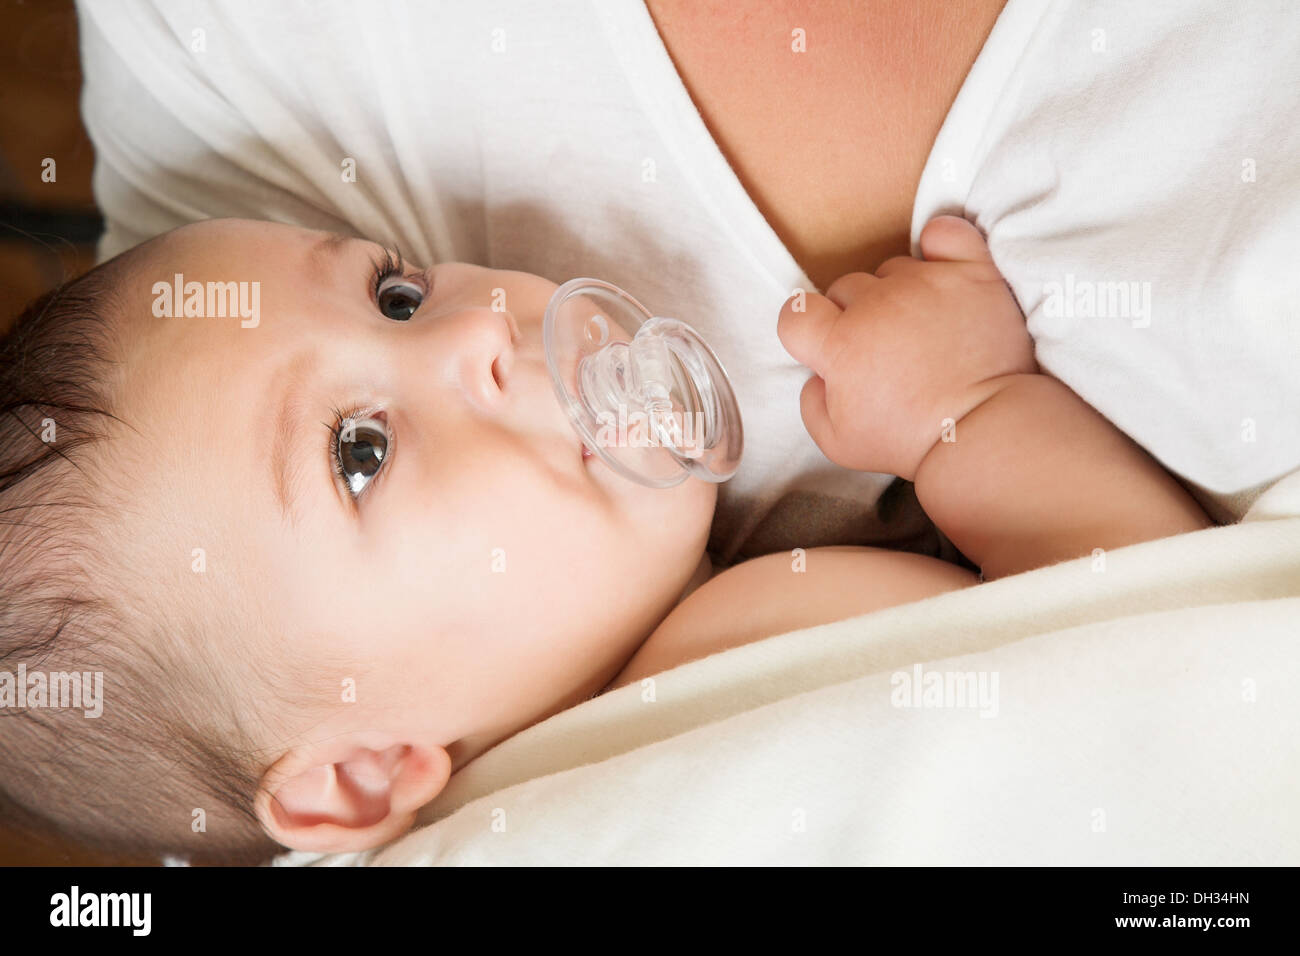 Bebé con chupete: fotografía de stock © hansenn #8299286